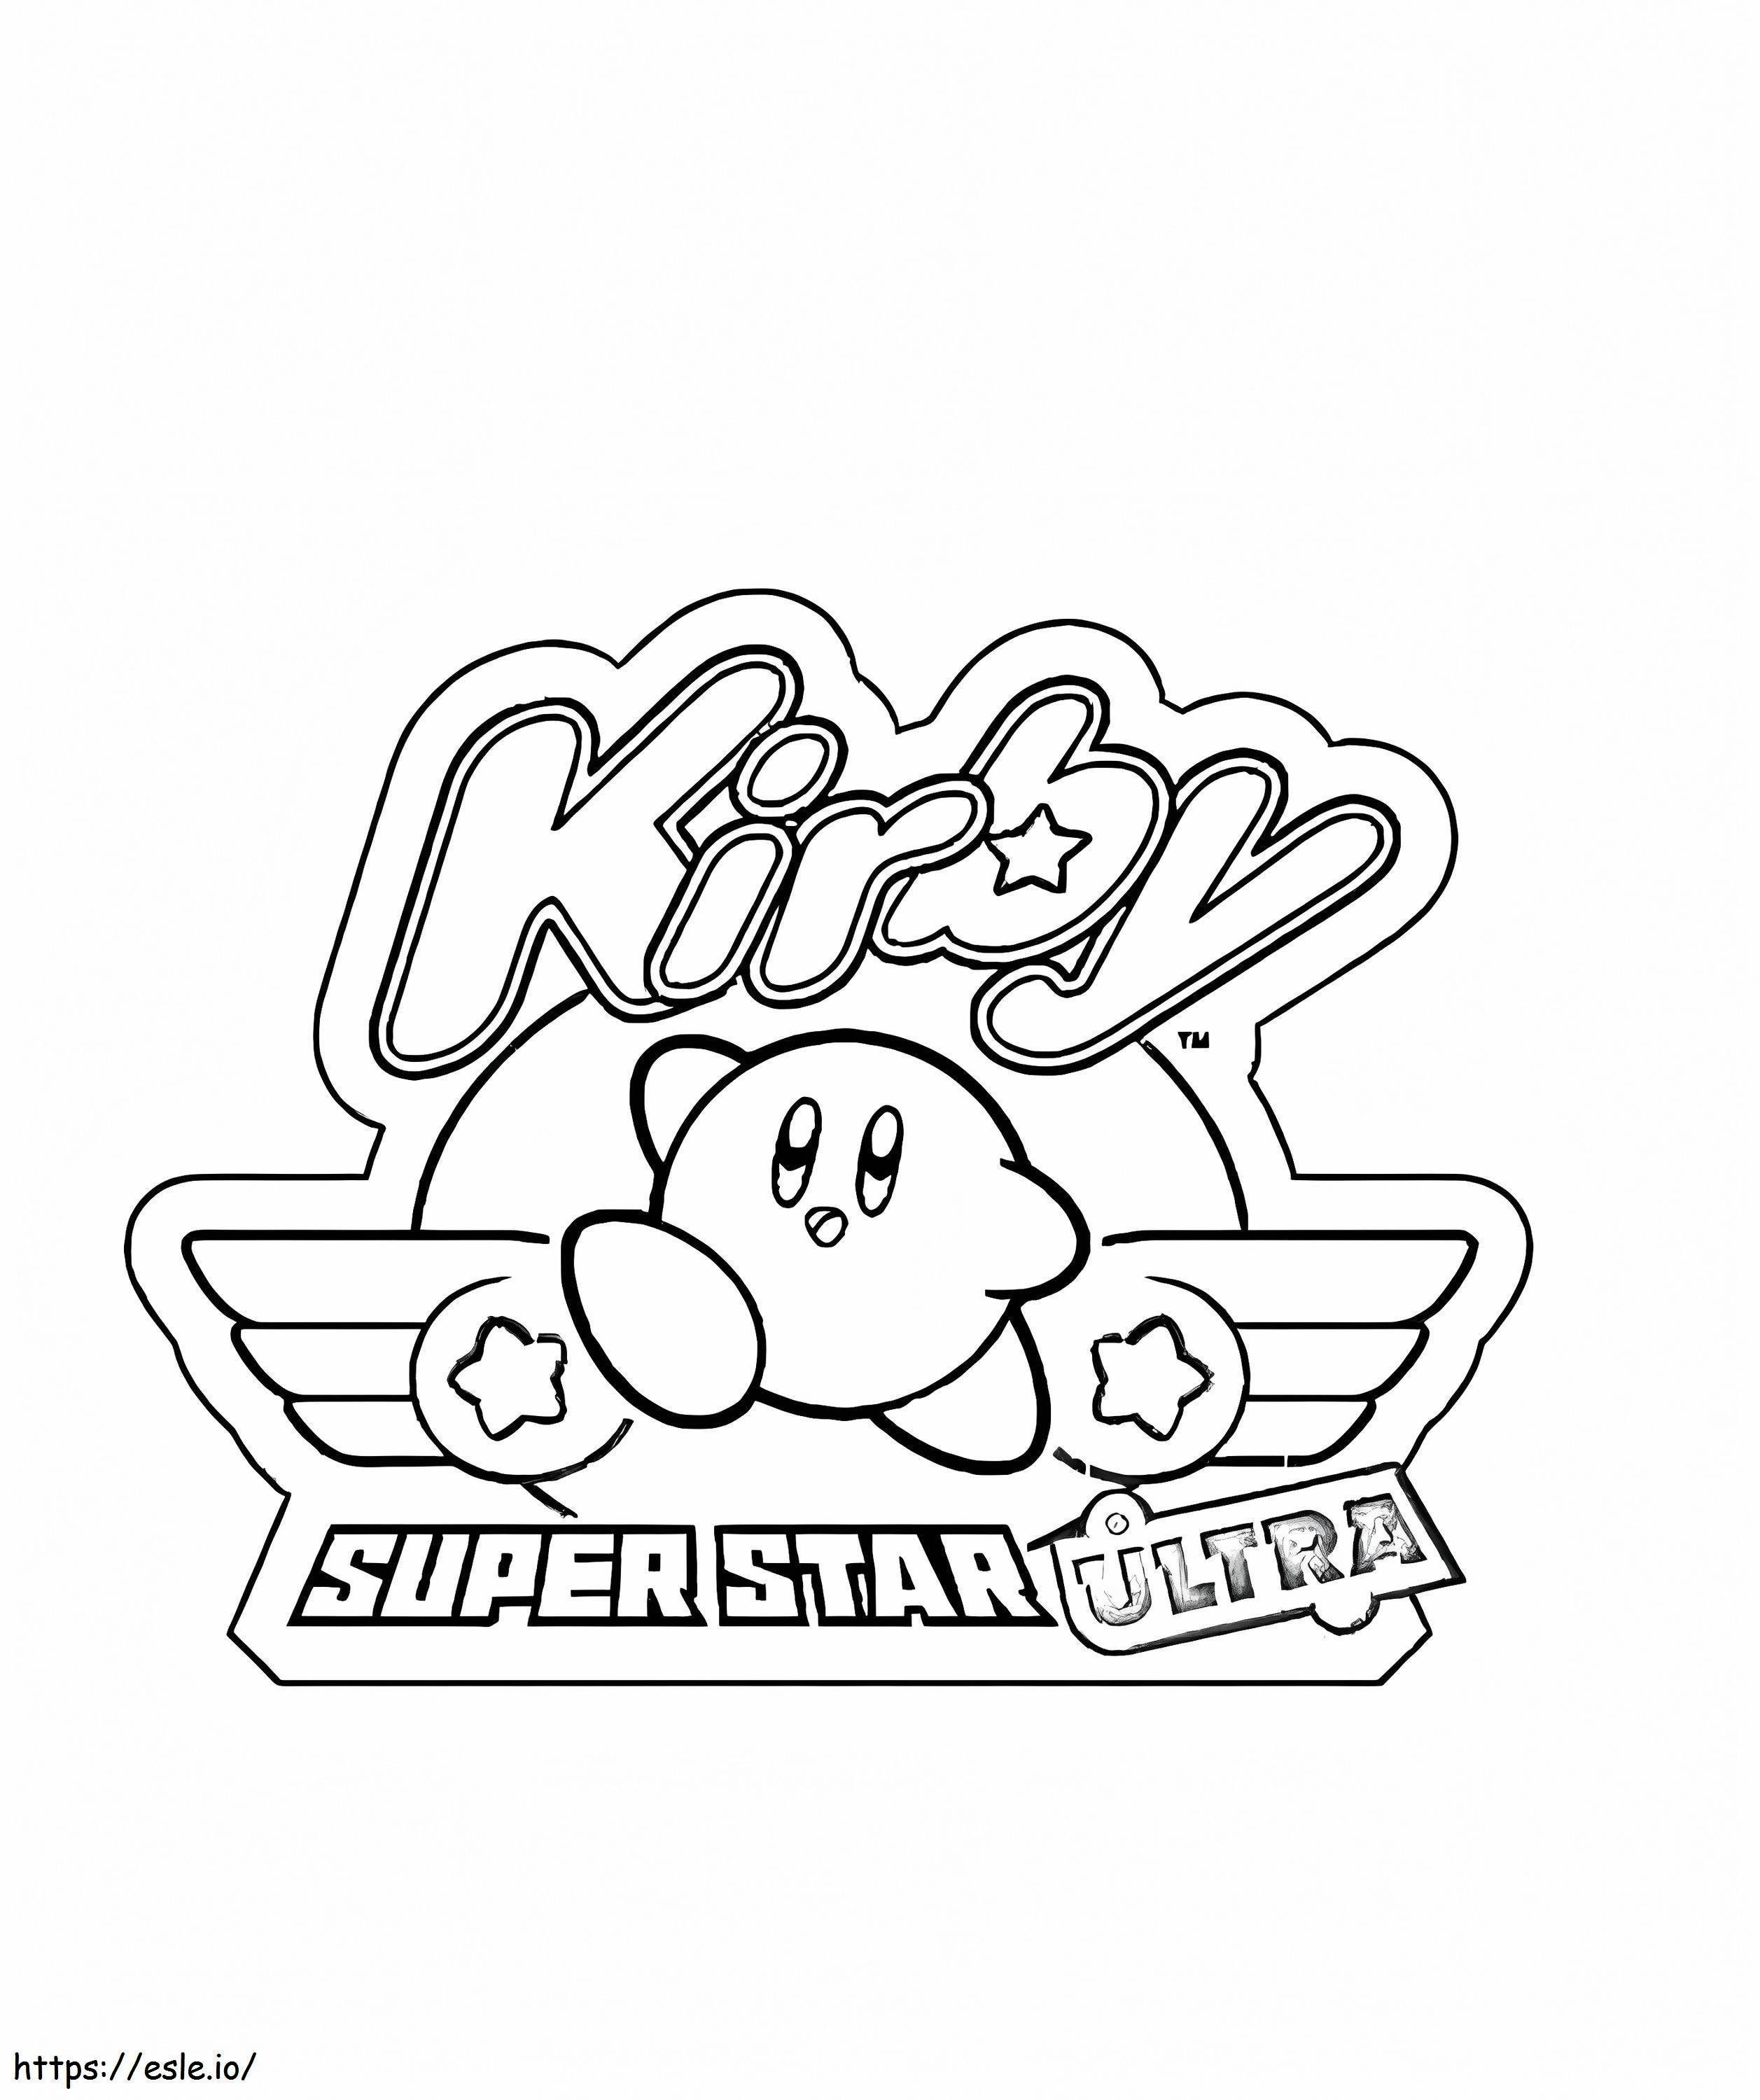 Supergwiazda Ultra Kirby kolorowanka